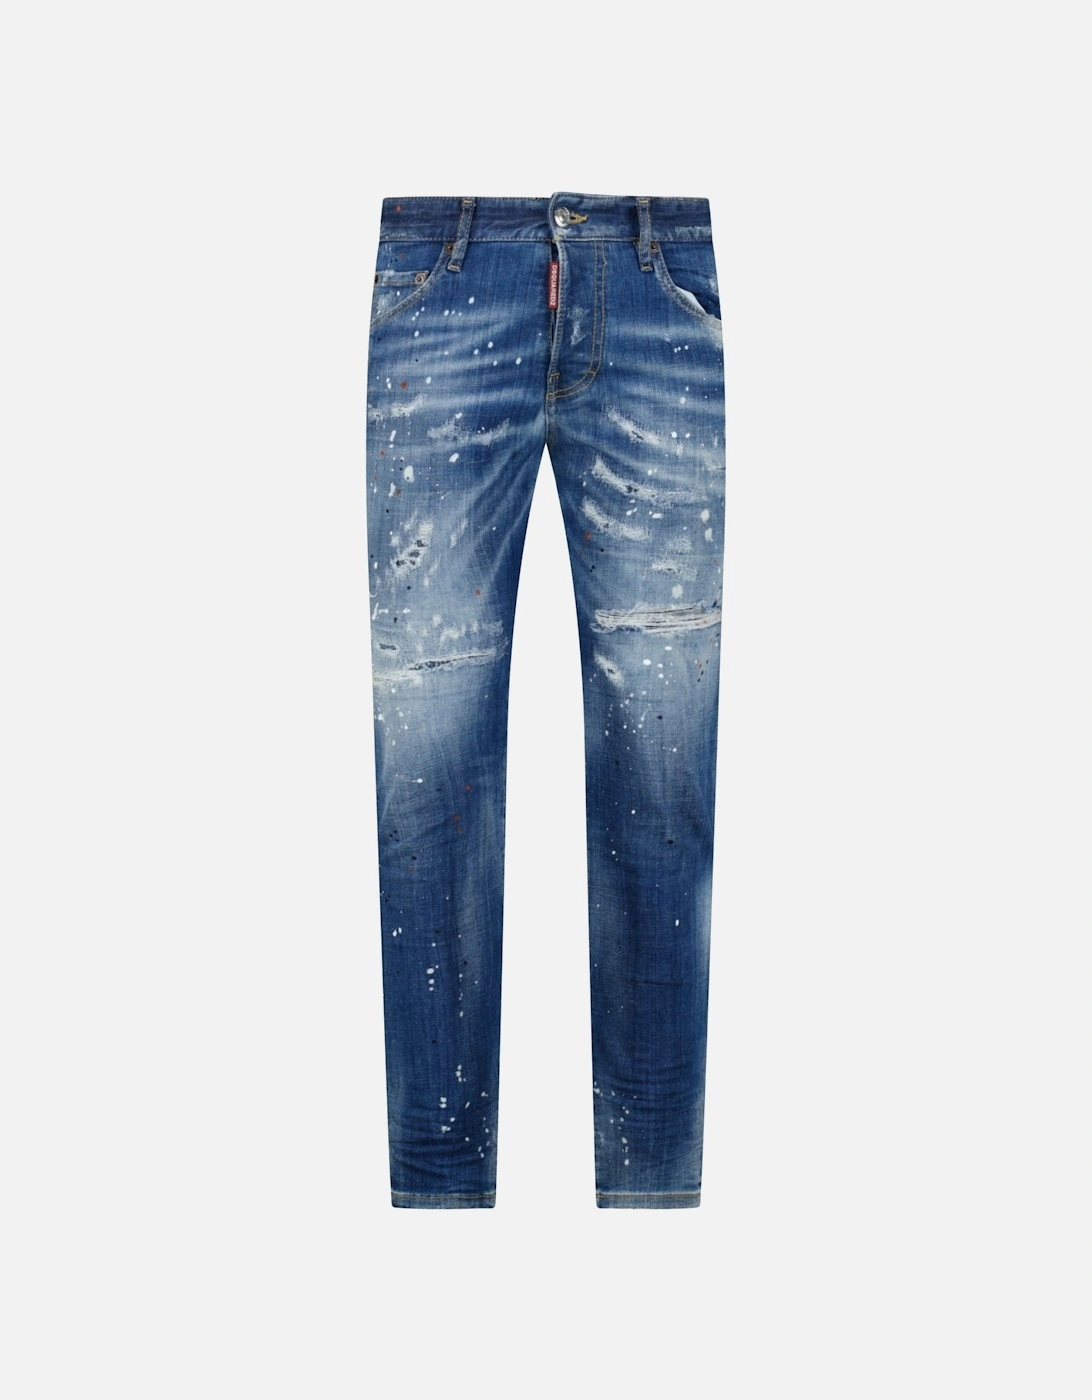 'Skater Jean' Orange & White Paint Splatter Jeans Blue, 5 of 4